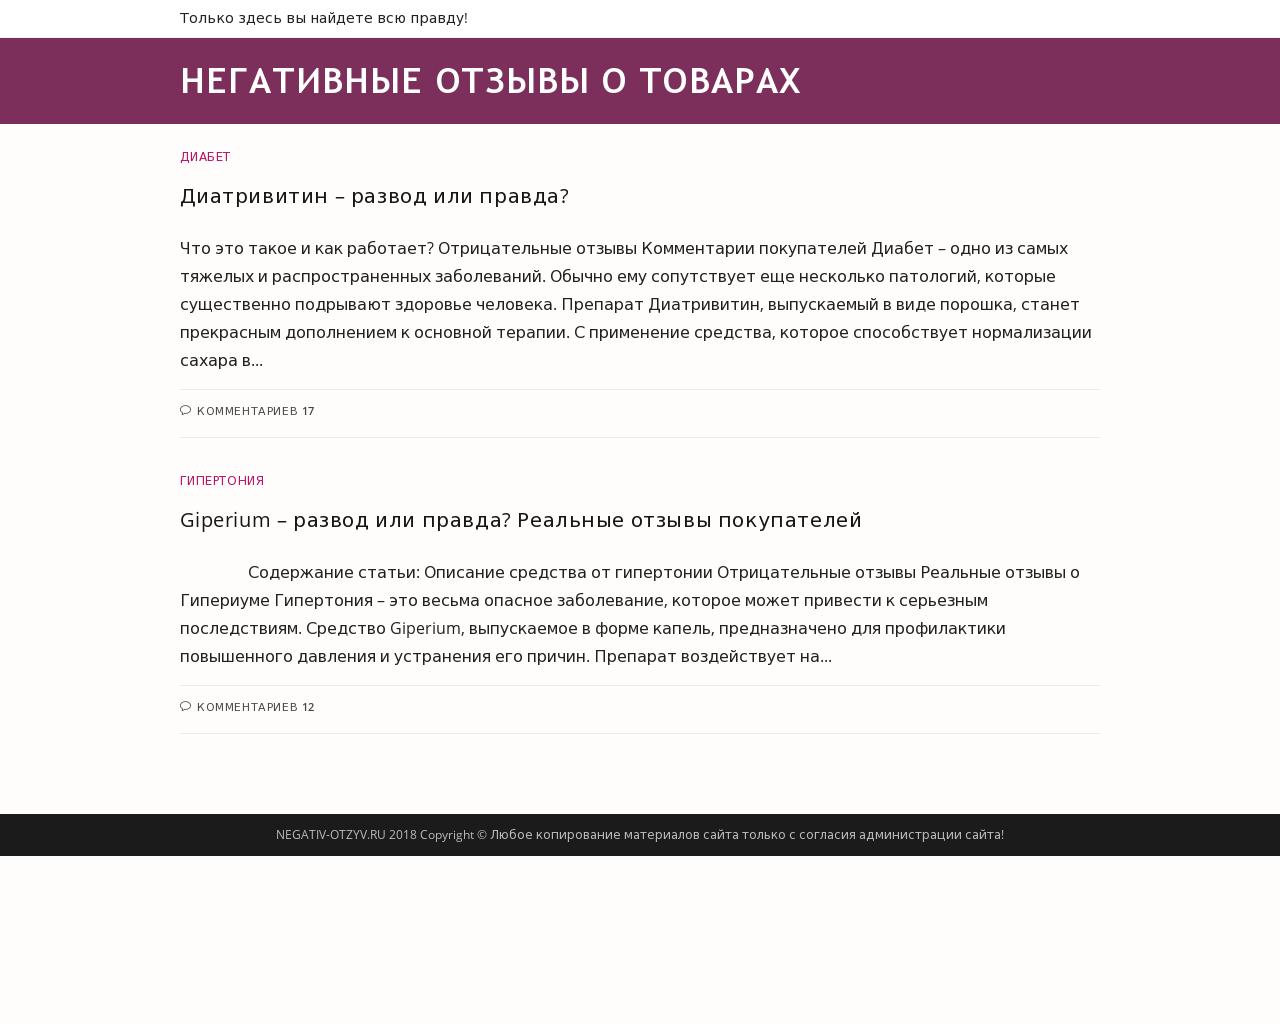 Изображение сайта negativ-otzyv.ru в разрешении 1280x1024